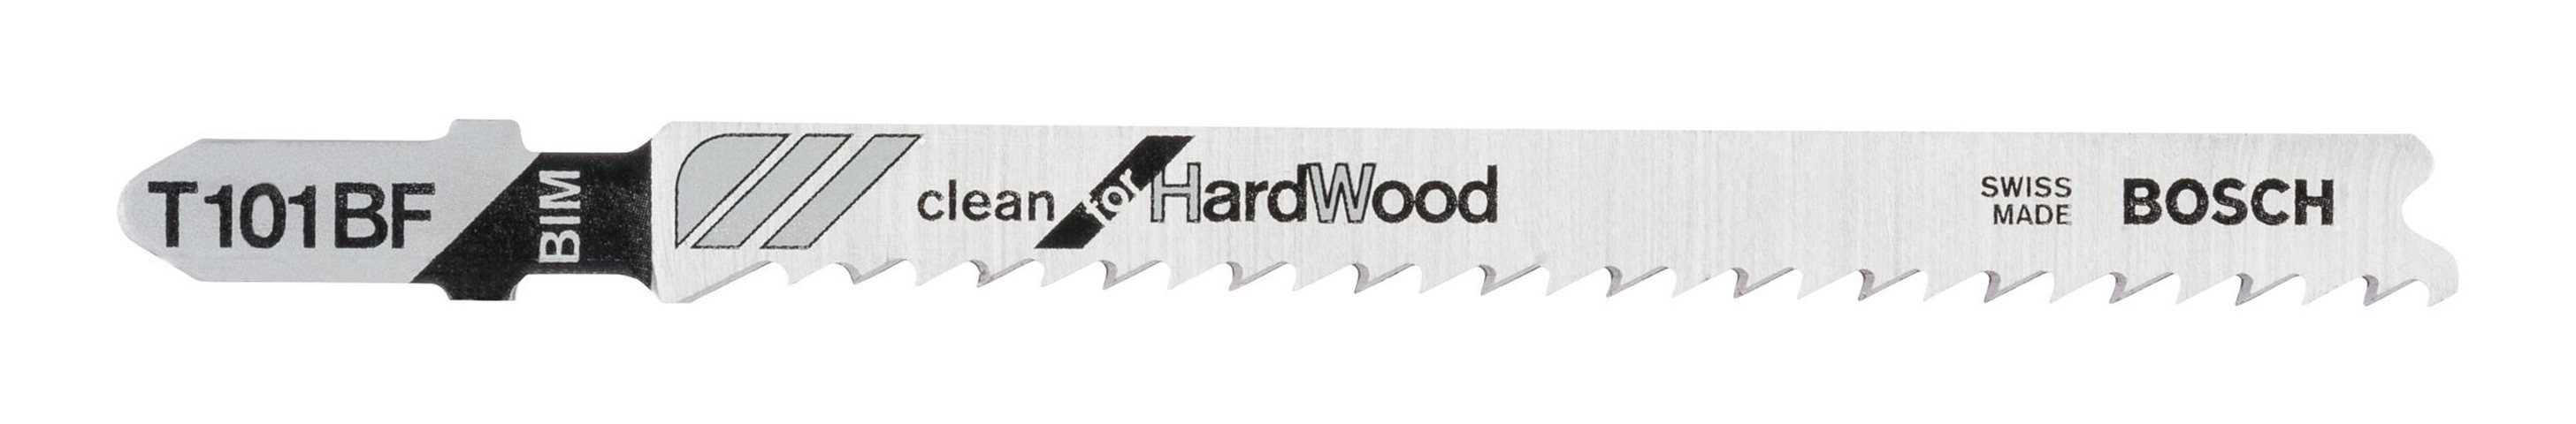 beliebte Produkte BOSCH Stichsägeblatt (25 Stück), T 101 BF - for Wood Hard Clean 25er-Pack